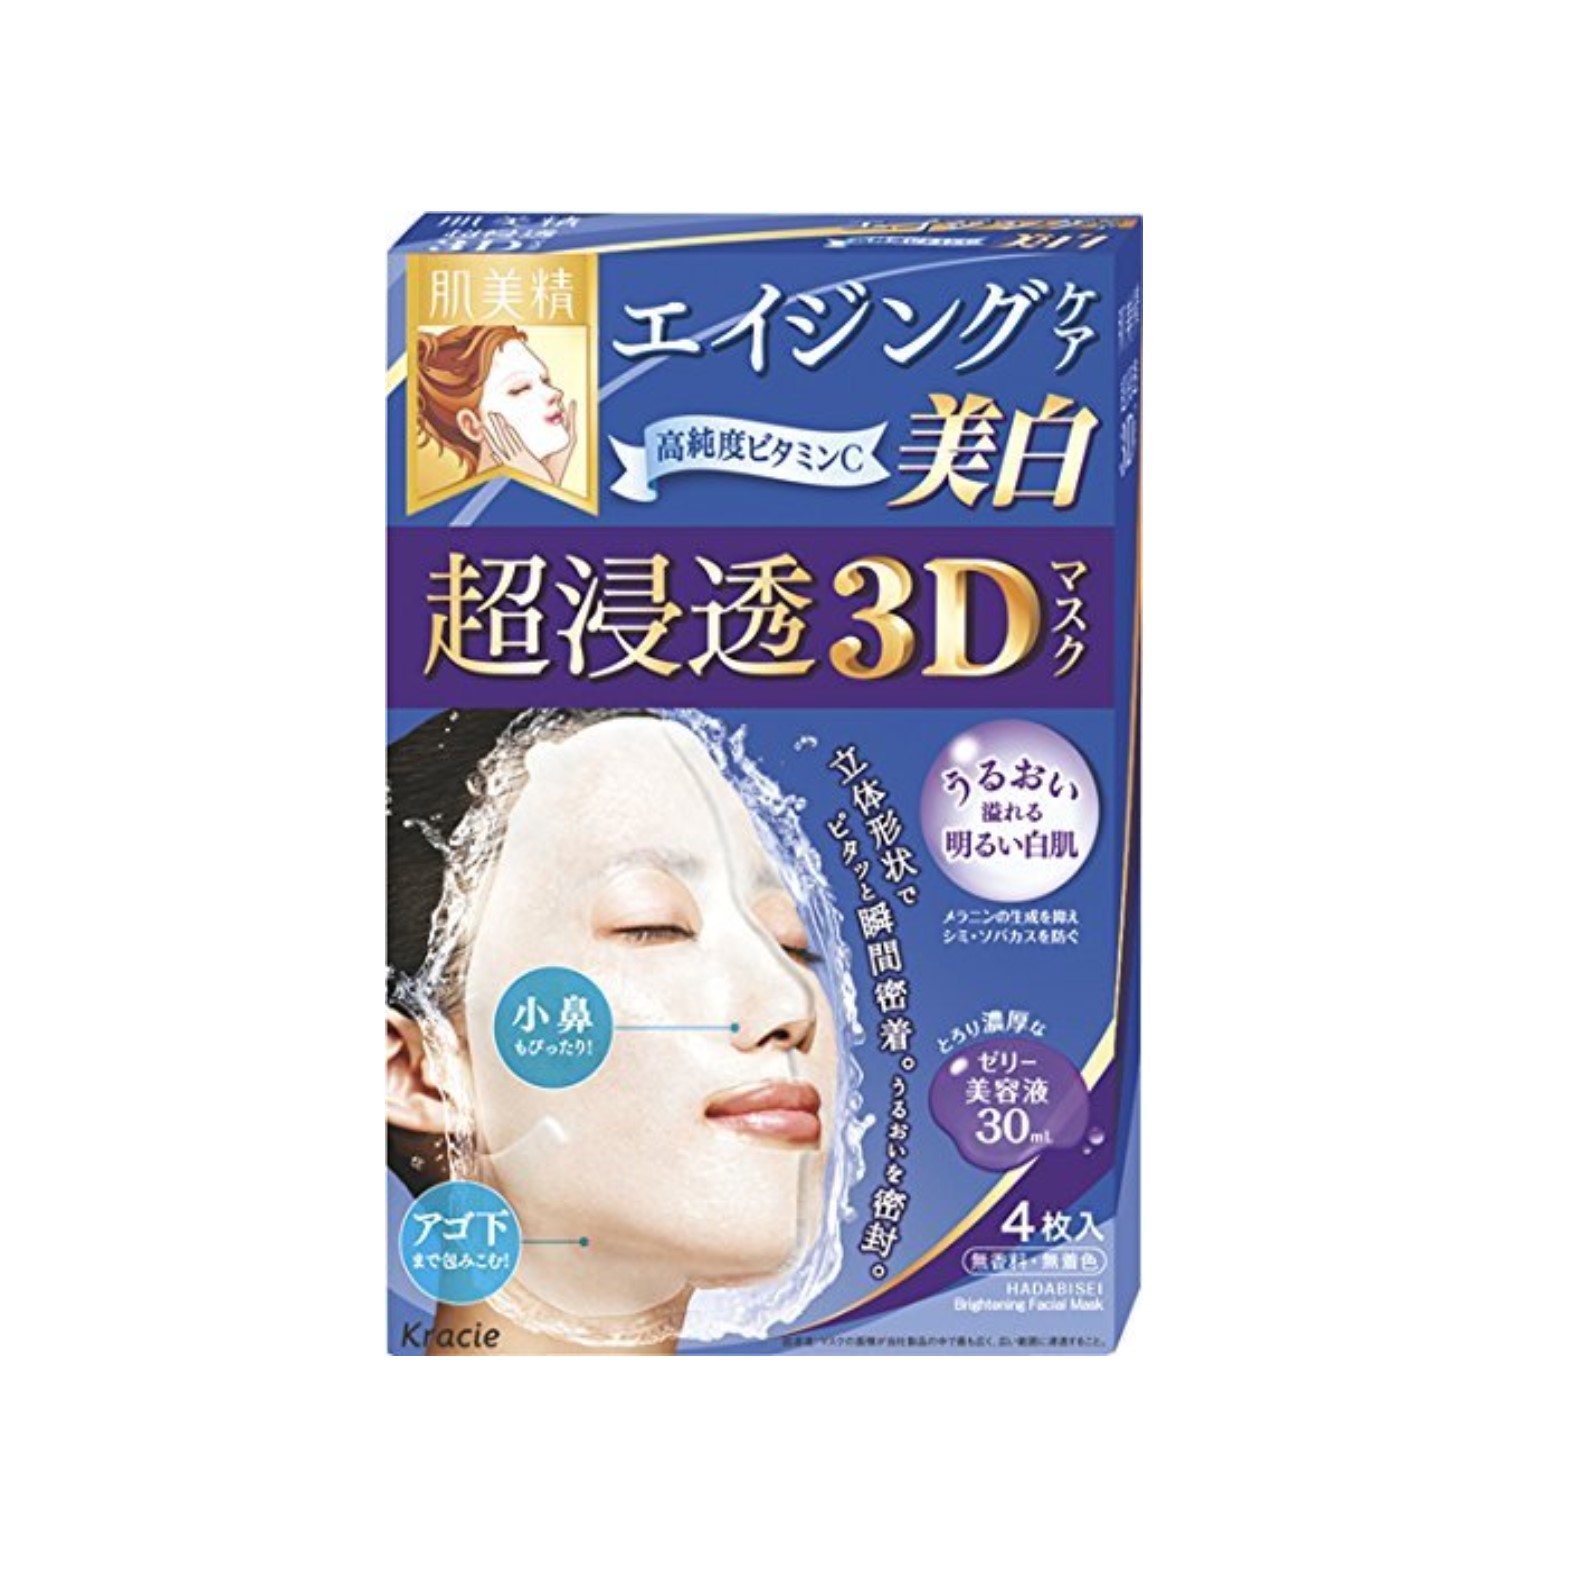 Kracie - Masque Visage Hadabisei 3D, Soins du vieillissement...